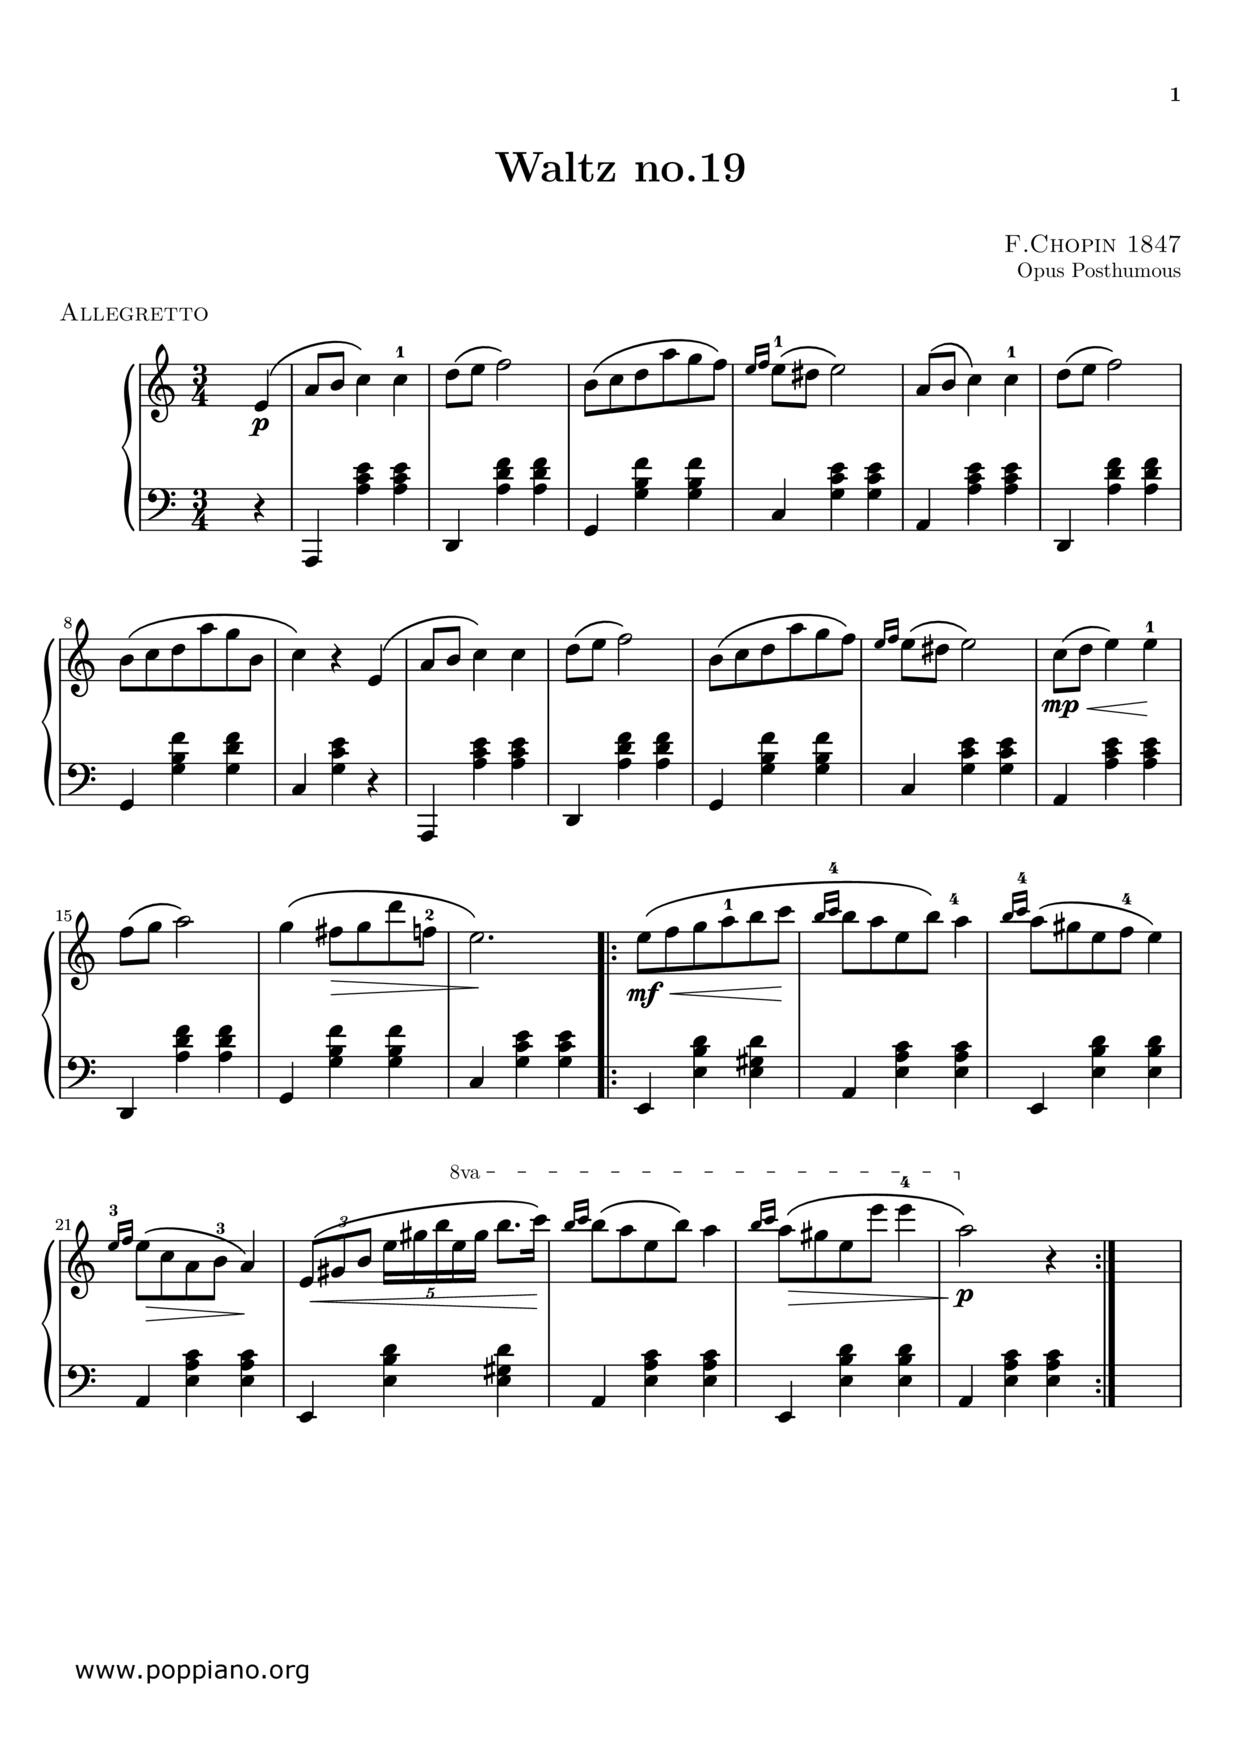 Nocturne No. 19 in E Minor, Op. 72, No. 1 Score